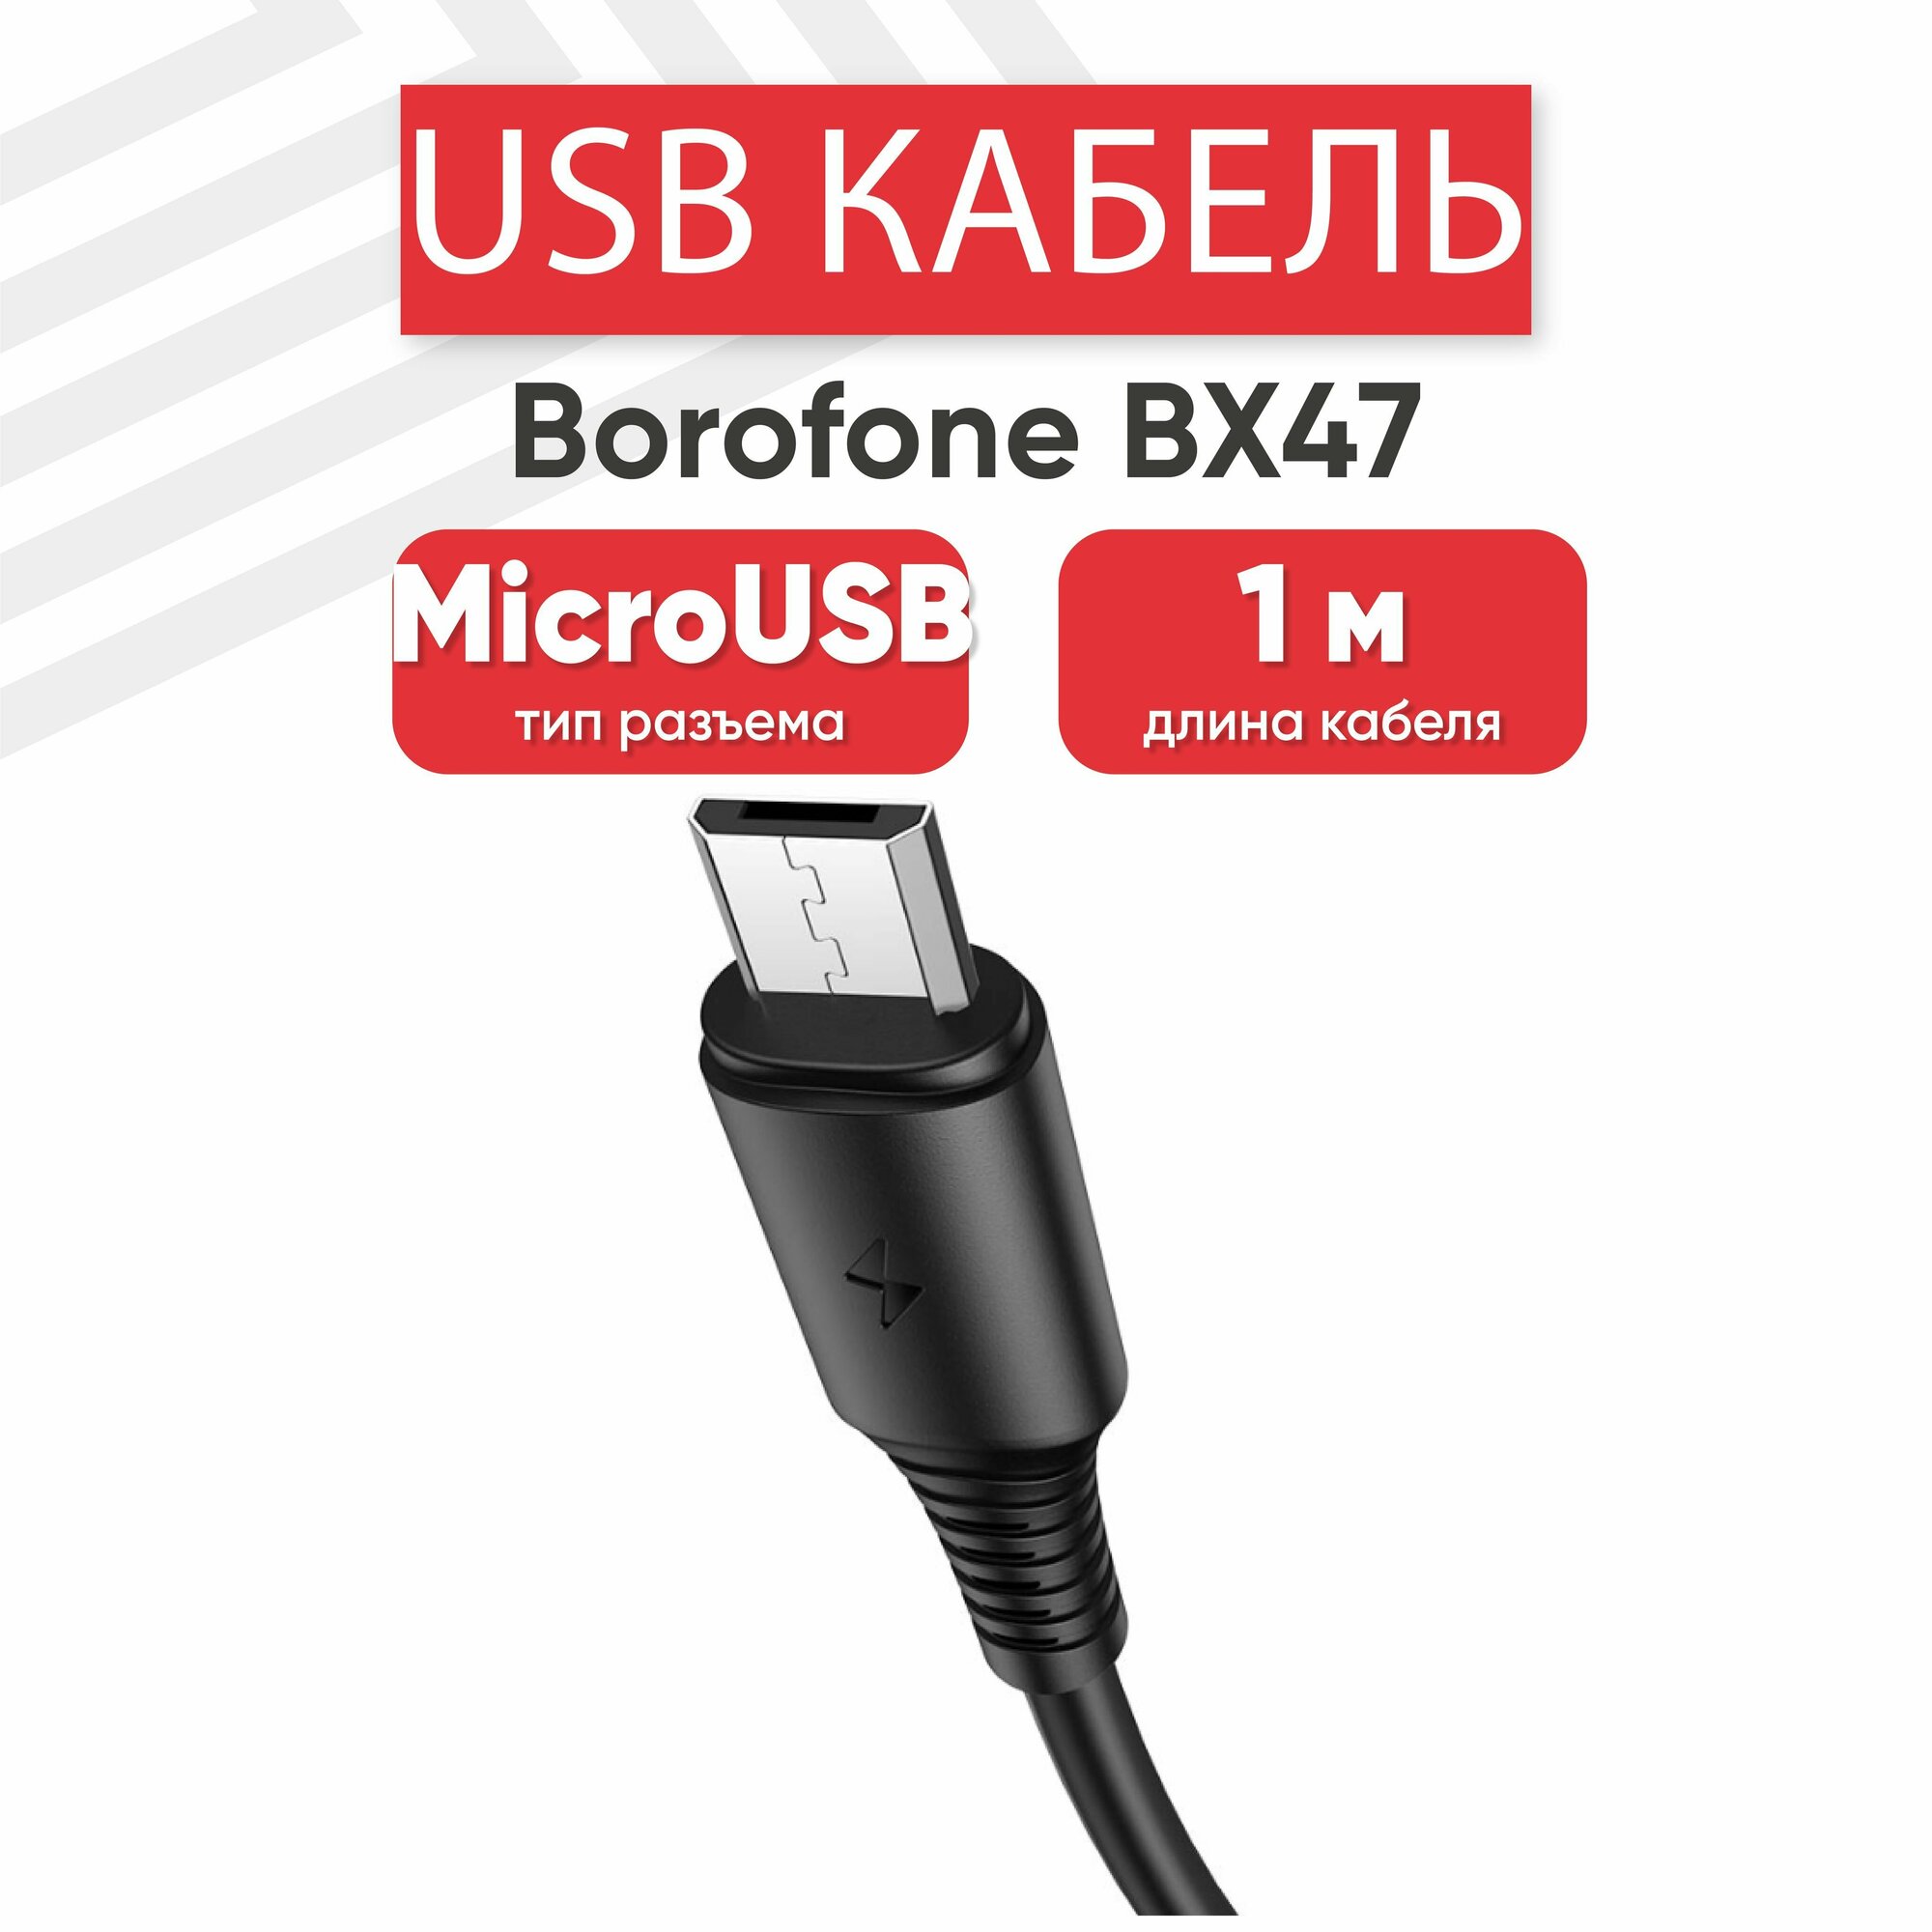 USB кабель Borofone BX47 для зарядки, передачи данных, MicroUSB, 2.4А, 1 метр, PVC, черный